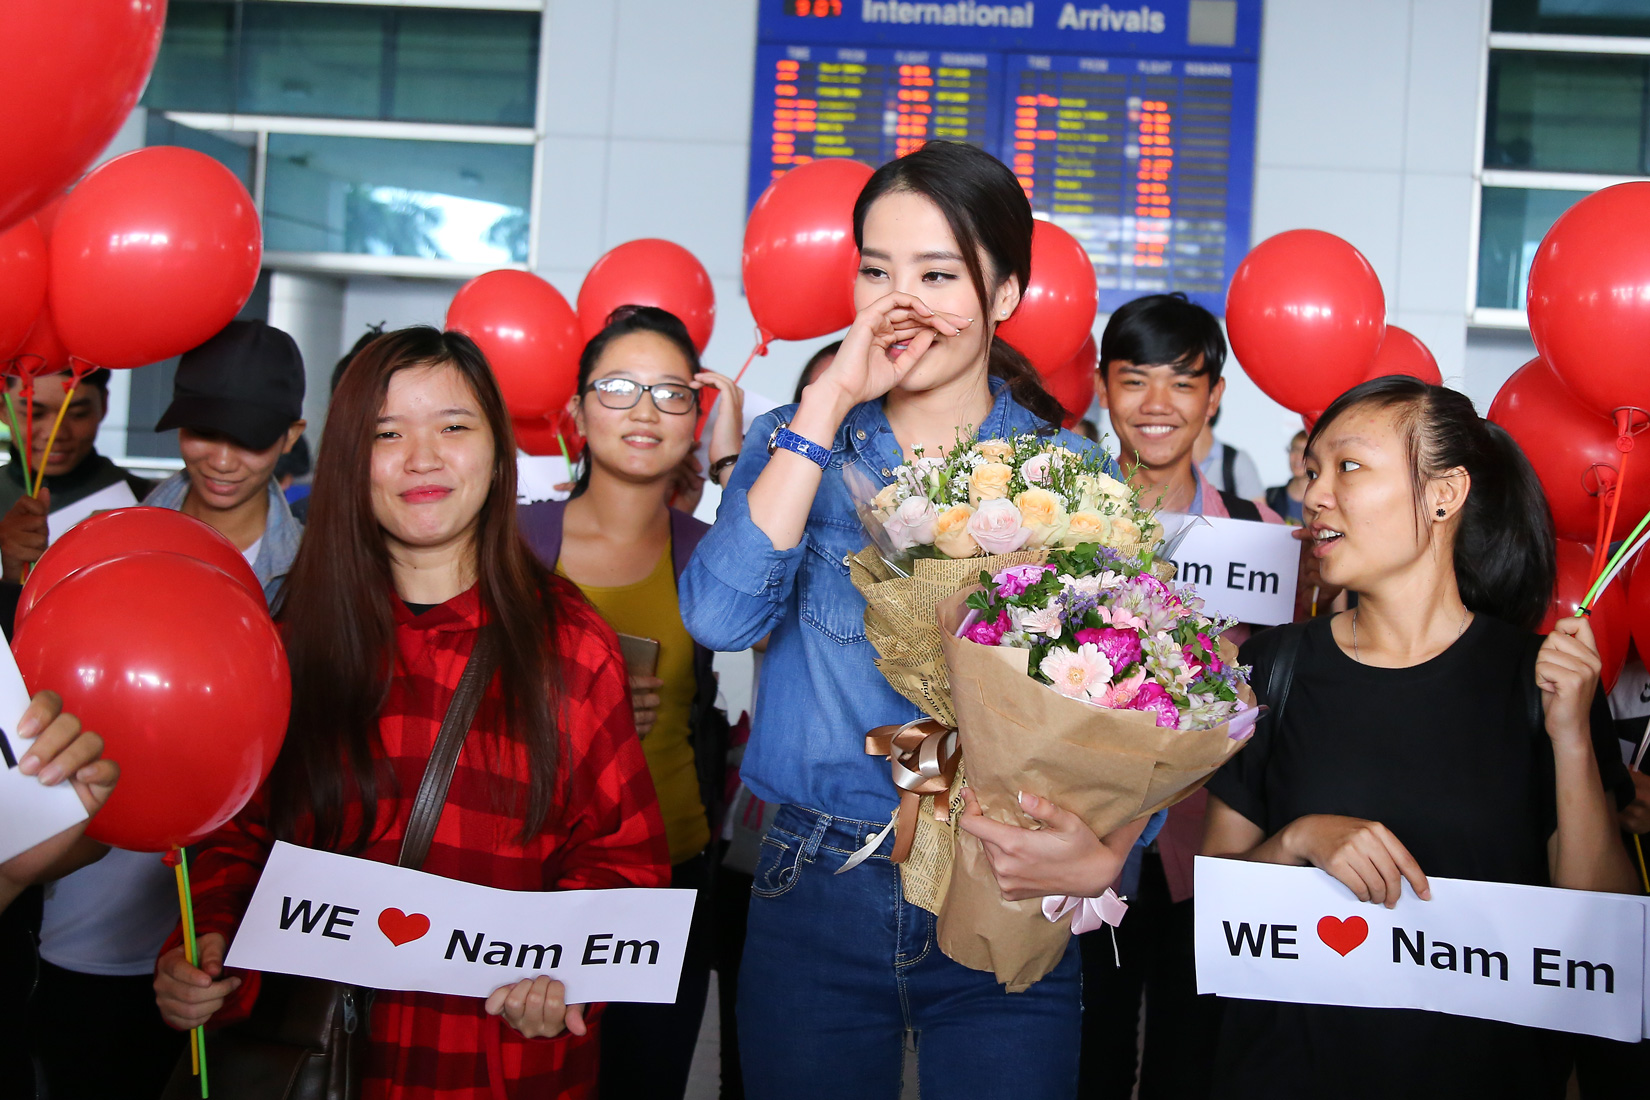 Các fan hâm mộ đã hô rất to, “Nam Em - Việt Nam” như nhắc lại phần giới thiệu của cô tại cuộc thi. Nhiều khách có mặt tại sân bay nhanh chóng nhận ra người đẹp và xin chụp ảnh liên tục.